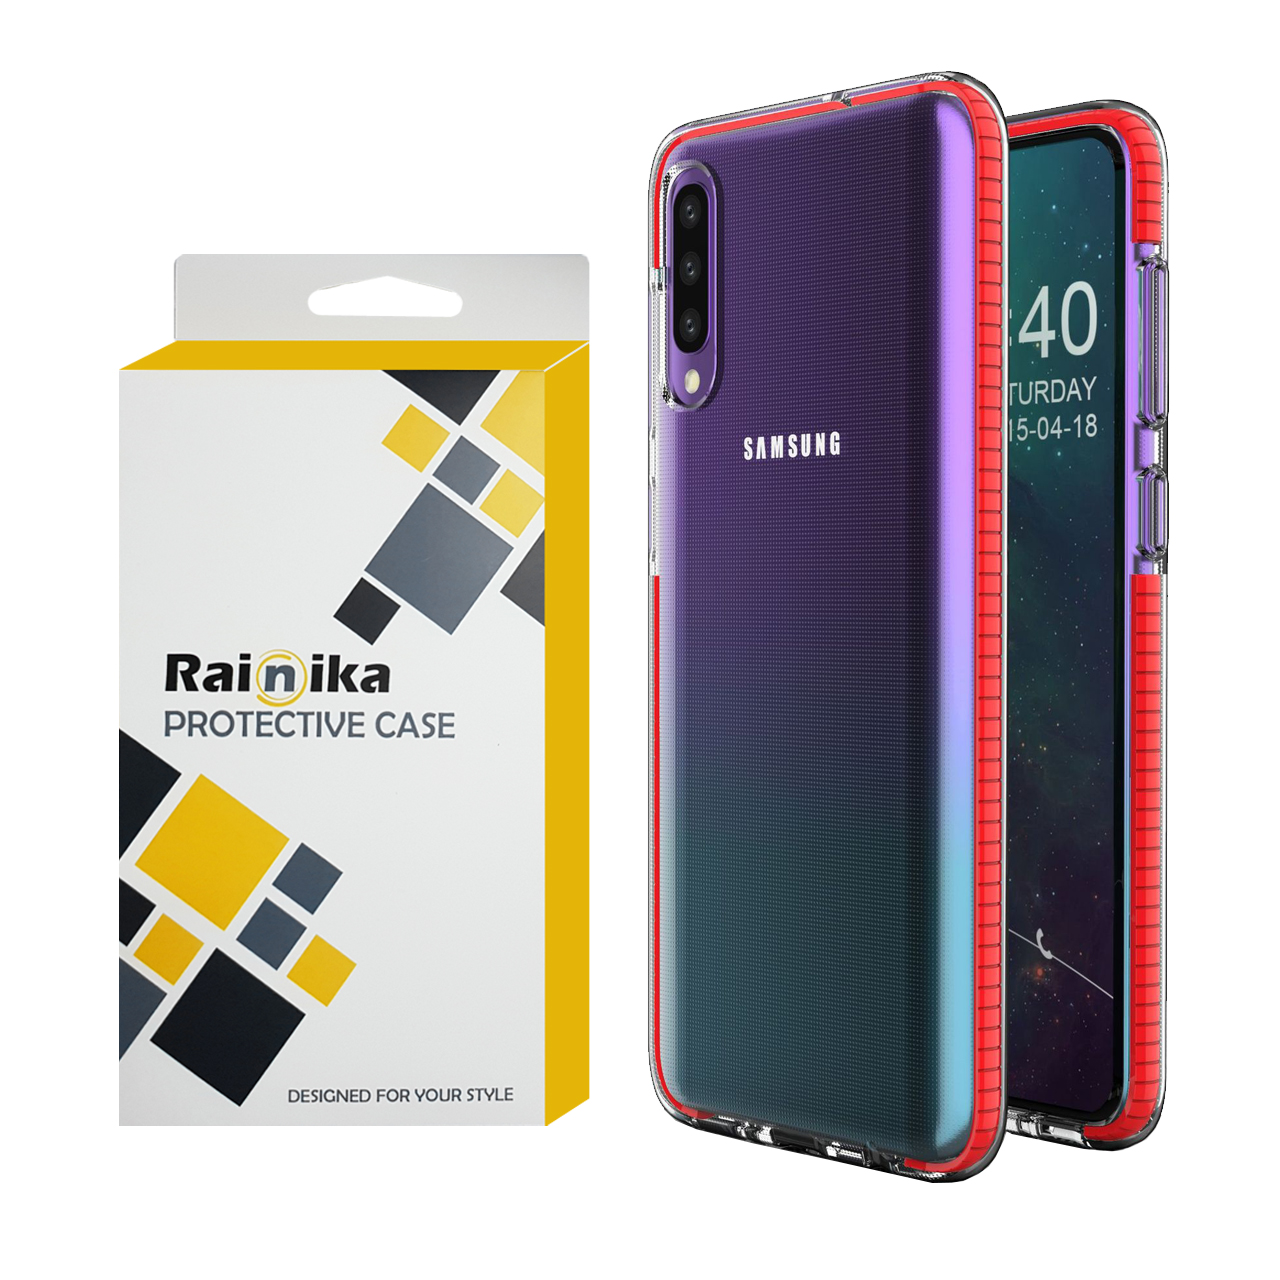 نقد و بررسی کاور رینیکا مدل 5030 مناسب برای گوشی موبایل سامسونگ Galaxy A50s/A30s/A50 توسط خریداران